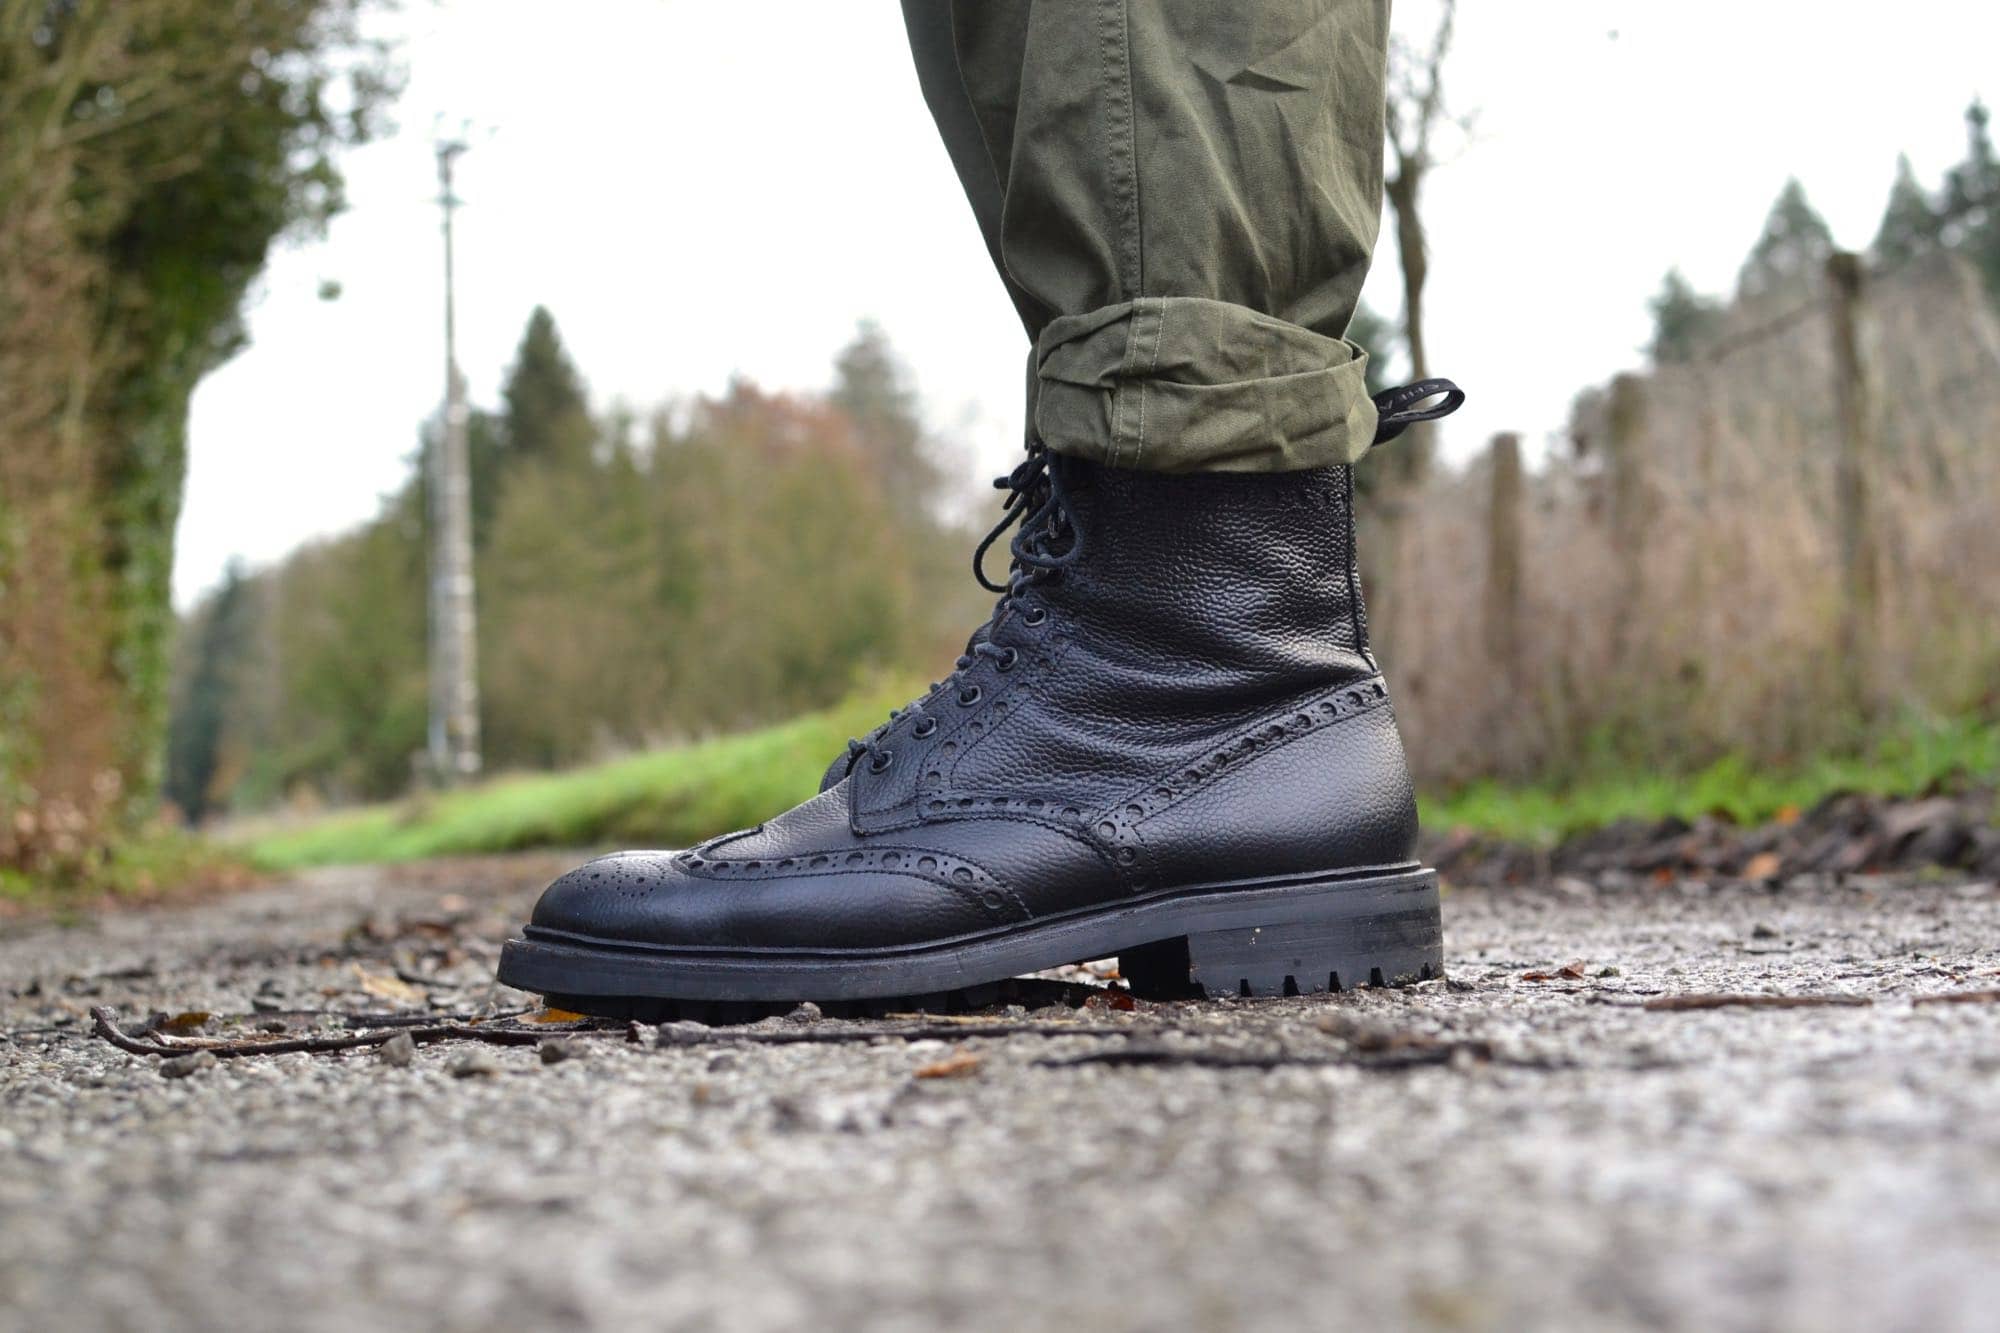 Cheany country boots black des brogies noires en cuir grainé pour homme dans un lookworkwear militaire